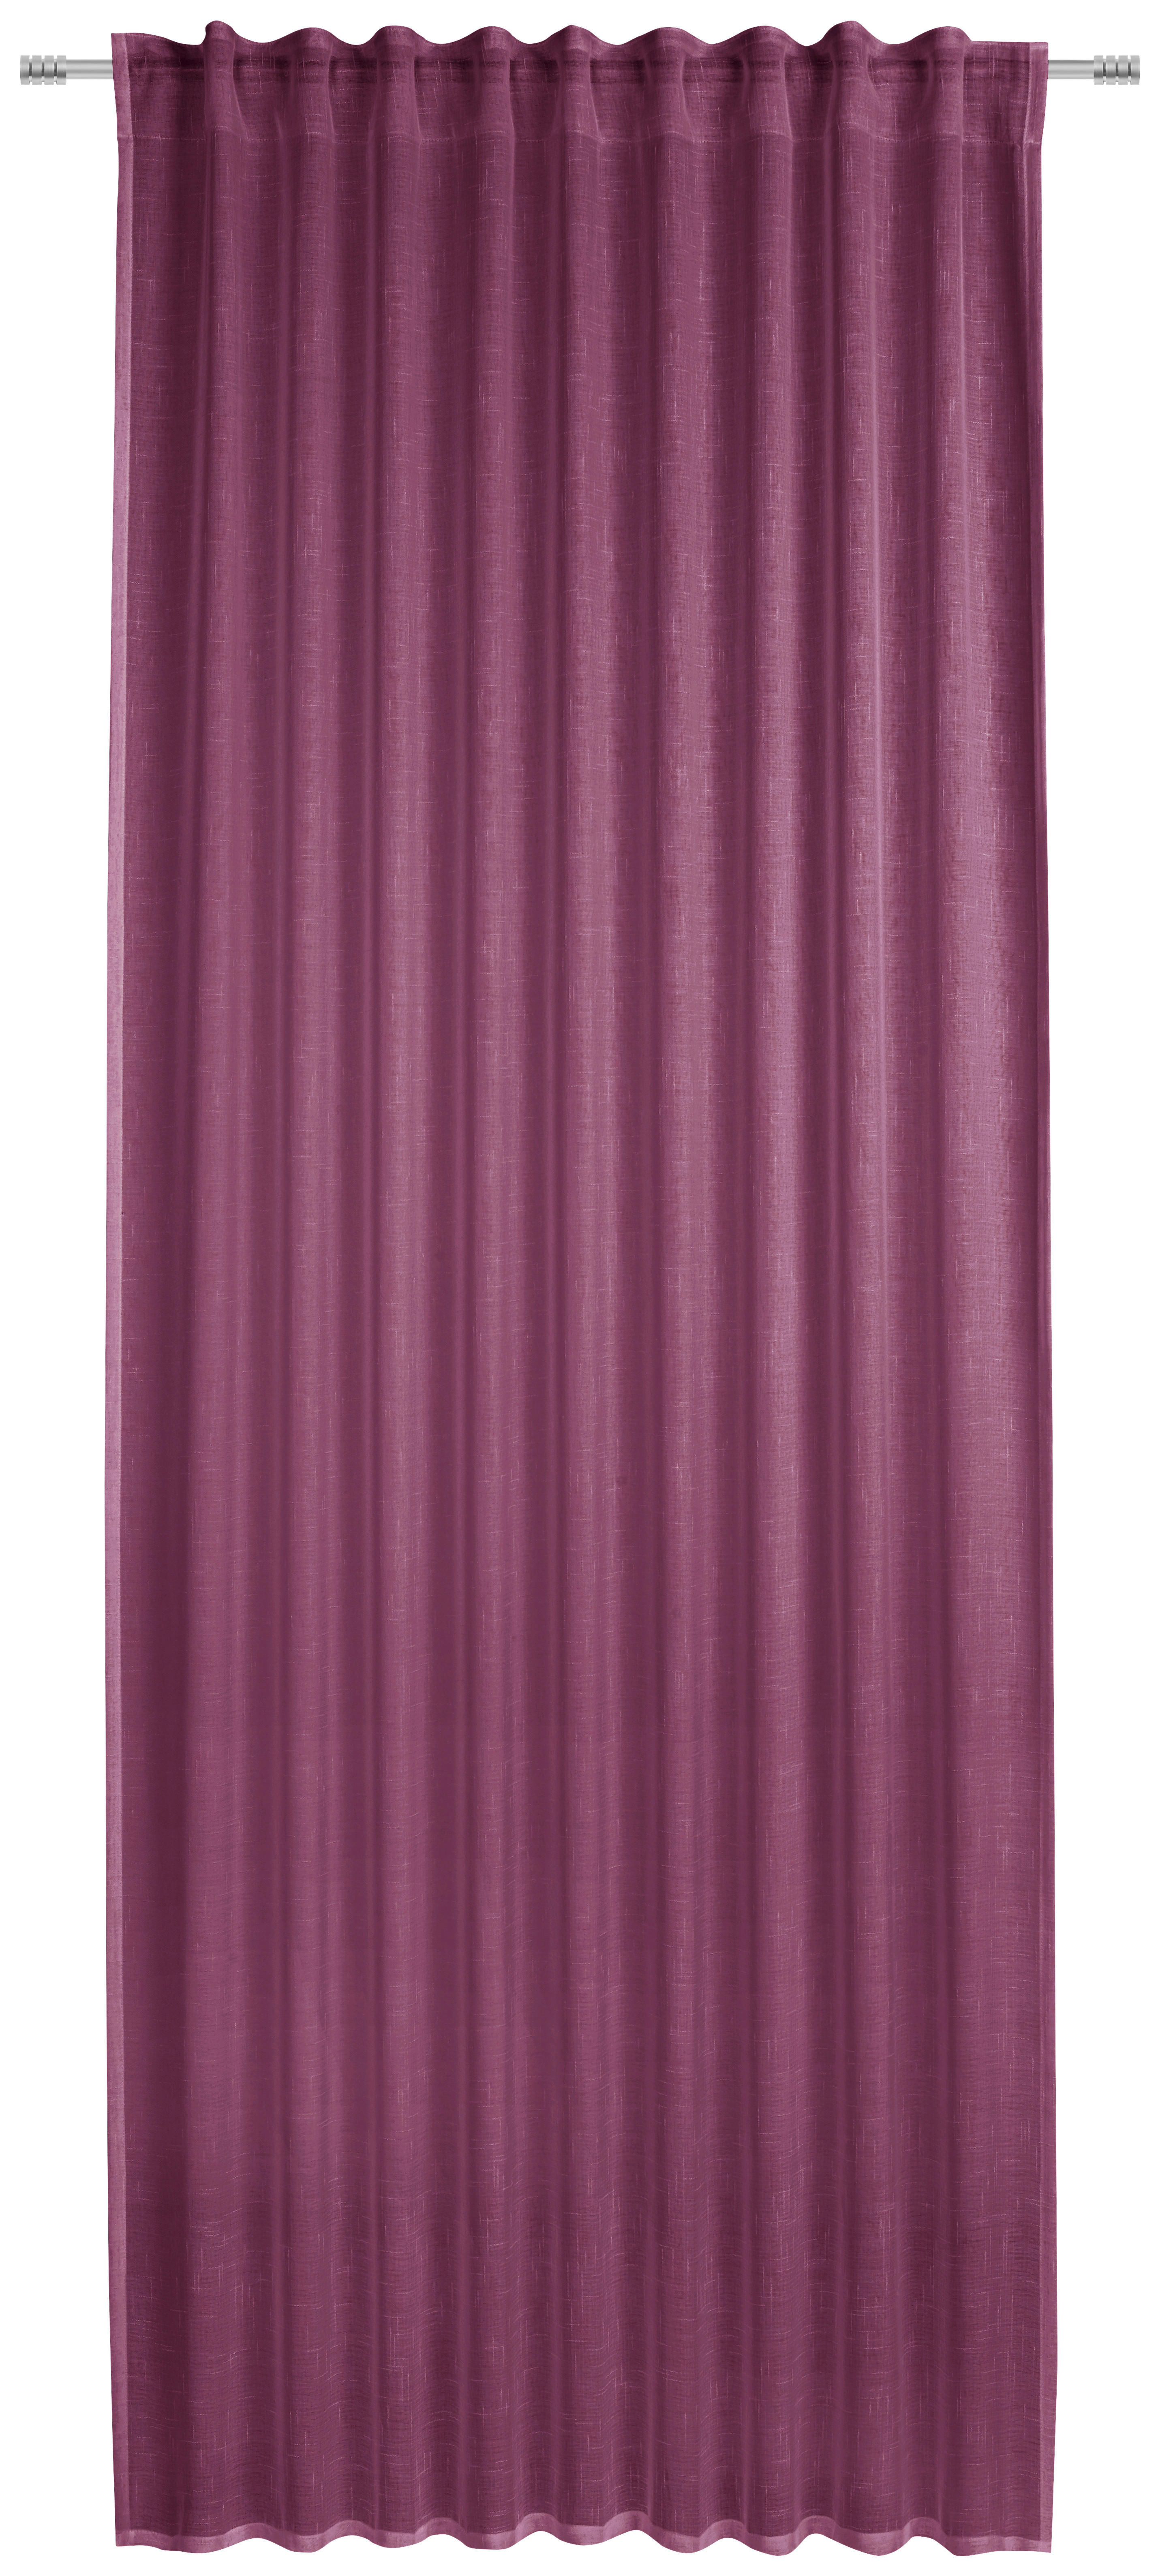 HOTELLGARDIN halvtransparent  - bär, Basics, textil (135/245cm) - Esposa